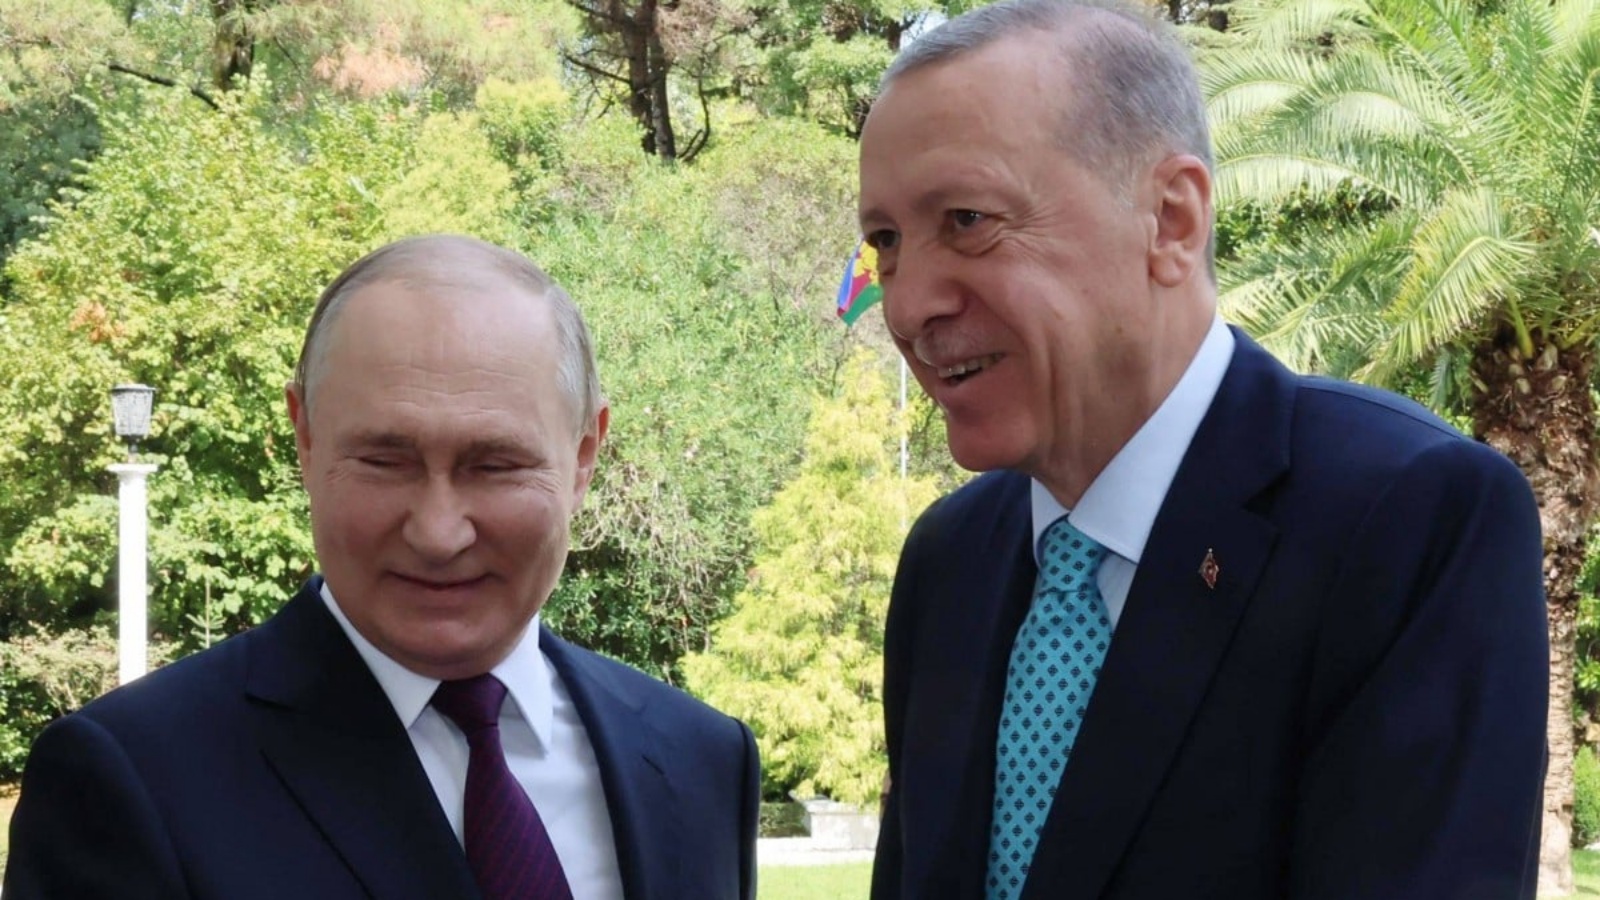 الرئيس الروسي فلاديمير بوتين (يسار) يرحب بالرئيس التركي رجب طيب أردوغان خلال لقائهما في سوتشي